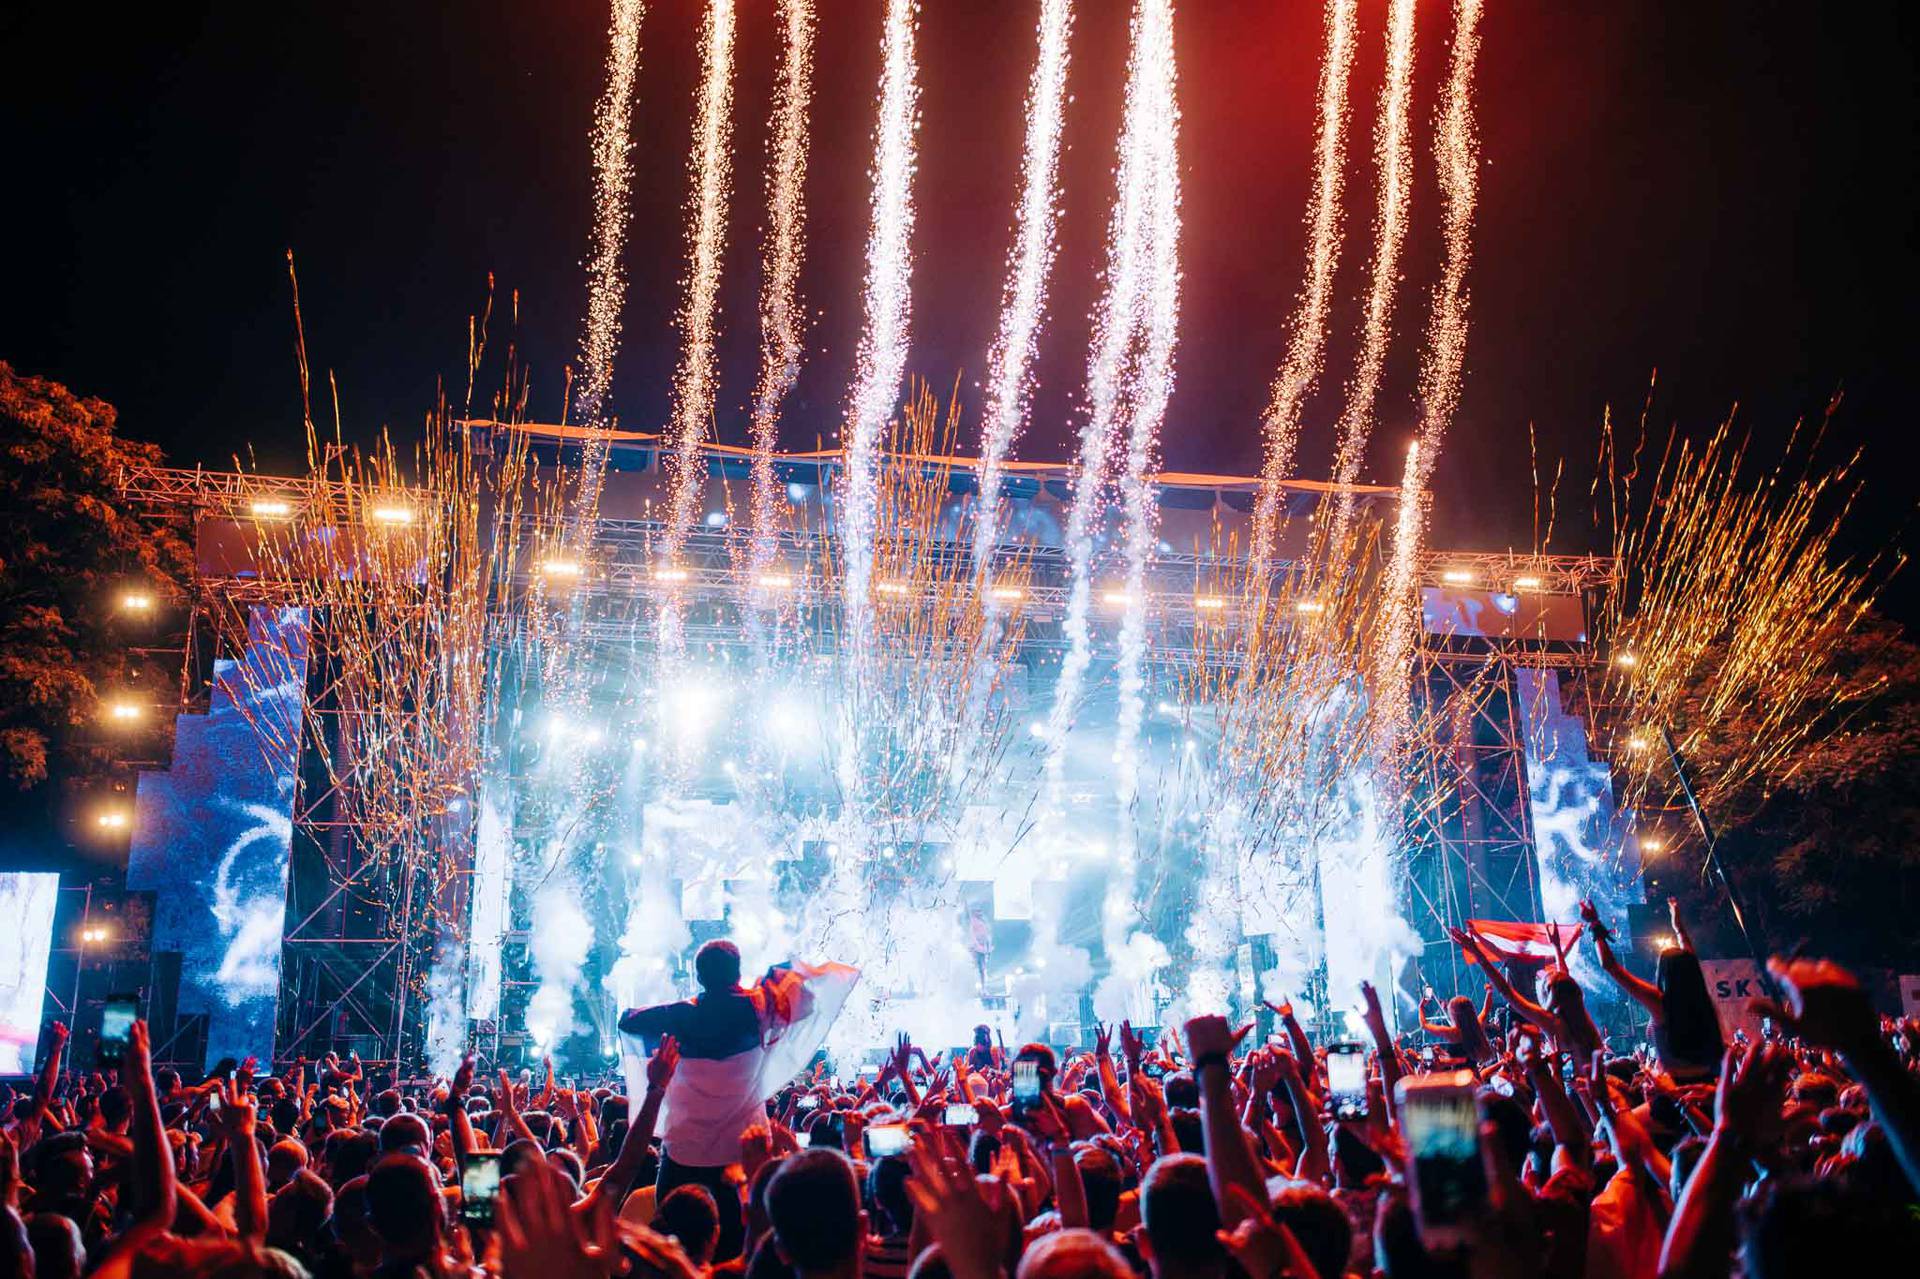 Najuspješniji DJ svijeta, Calvin Harris, ovog ljeta stiže na Exit: Nastupat će preko 60 izvođača